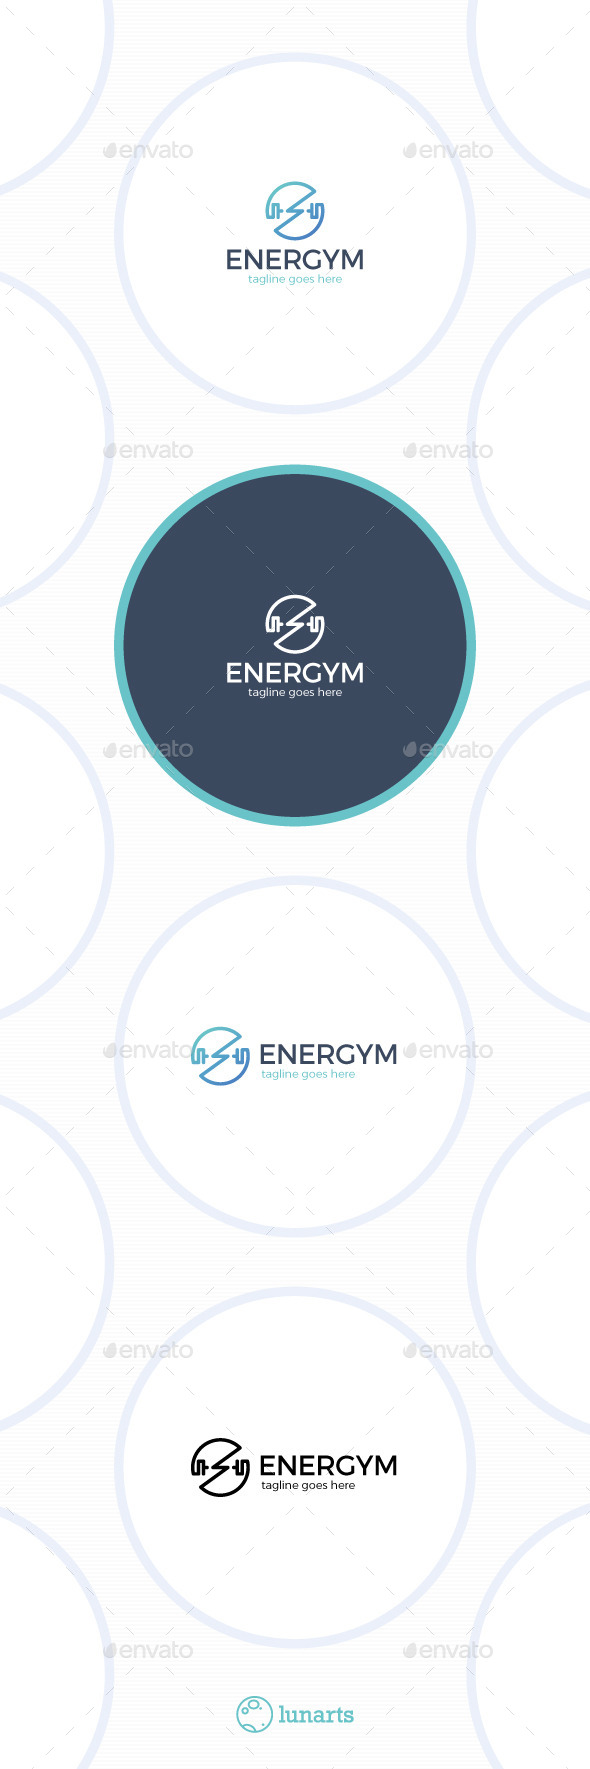 Energy Gym Logo - Power Circle